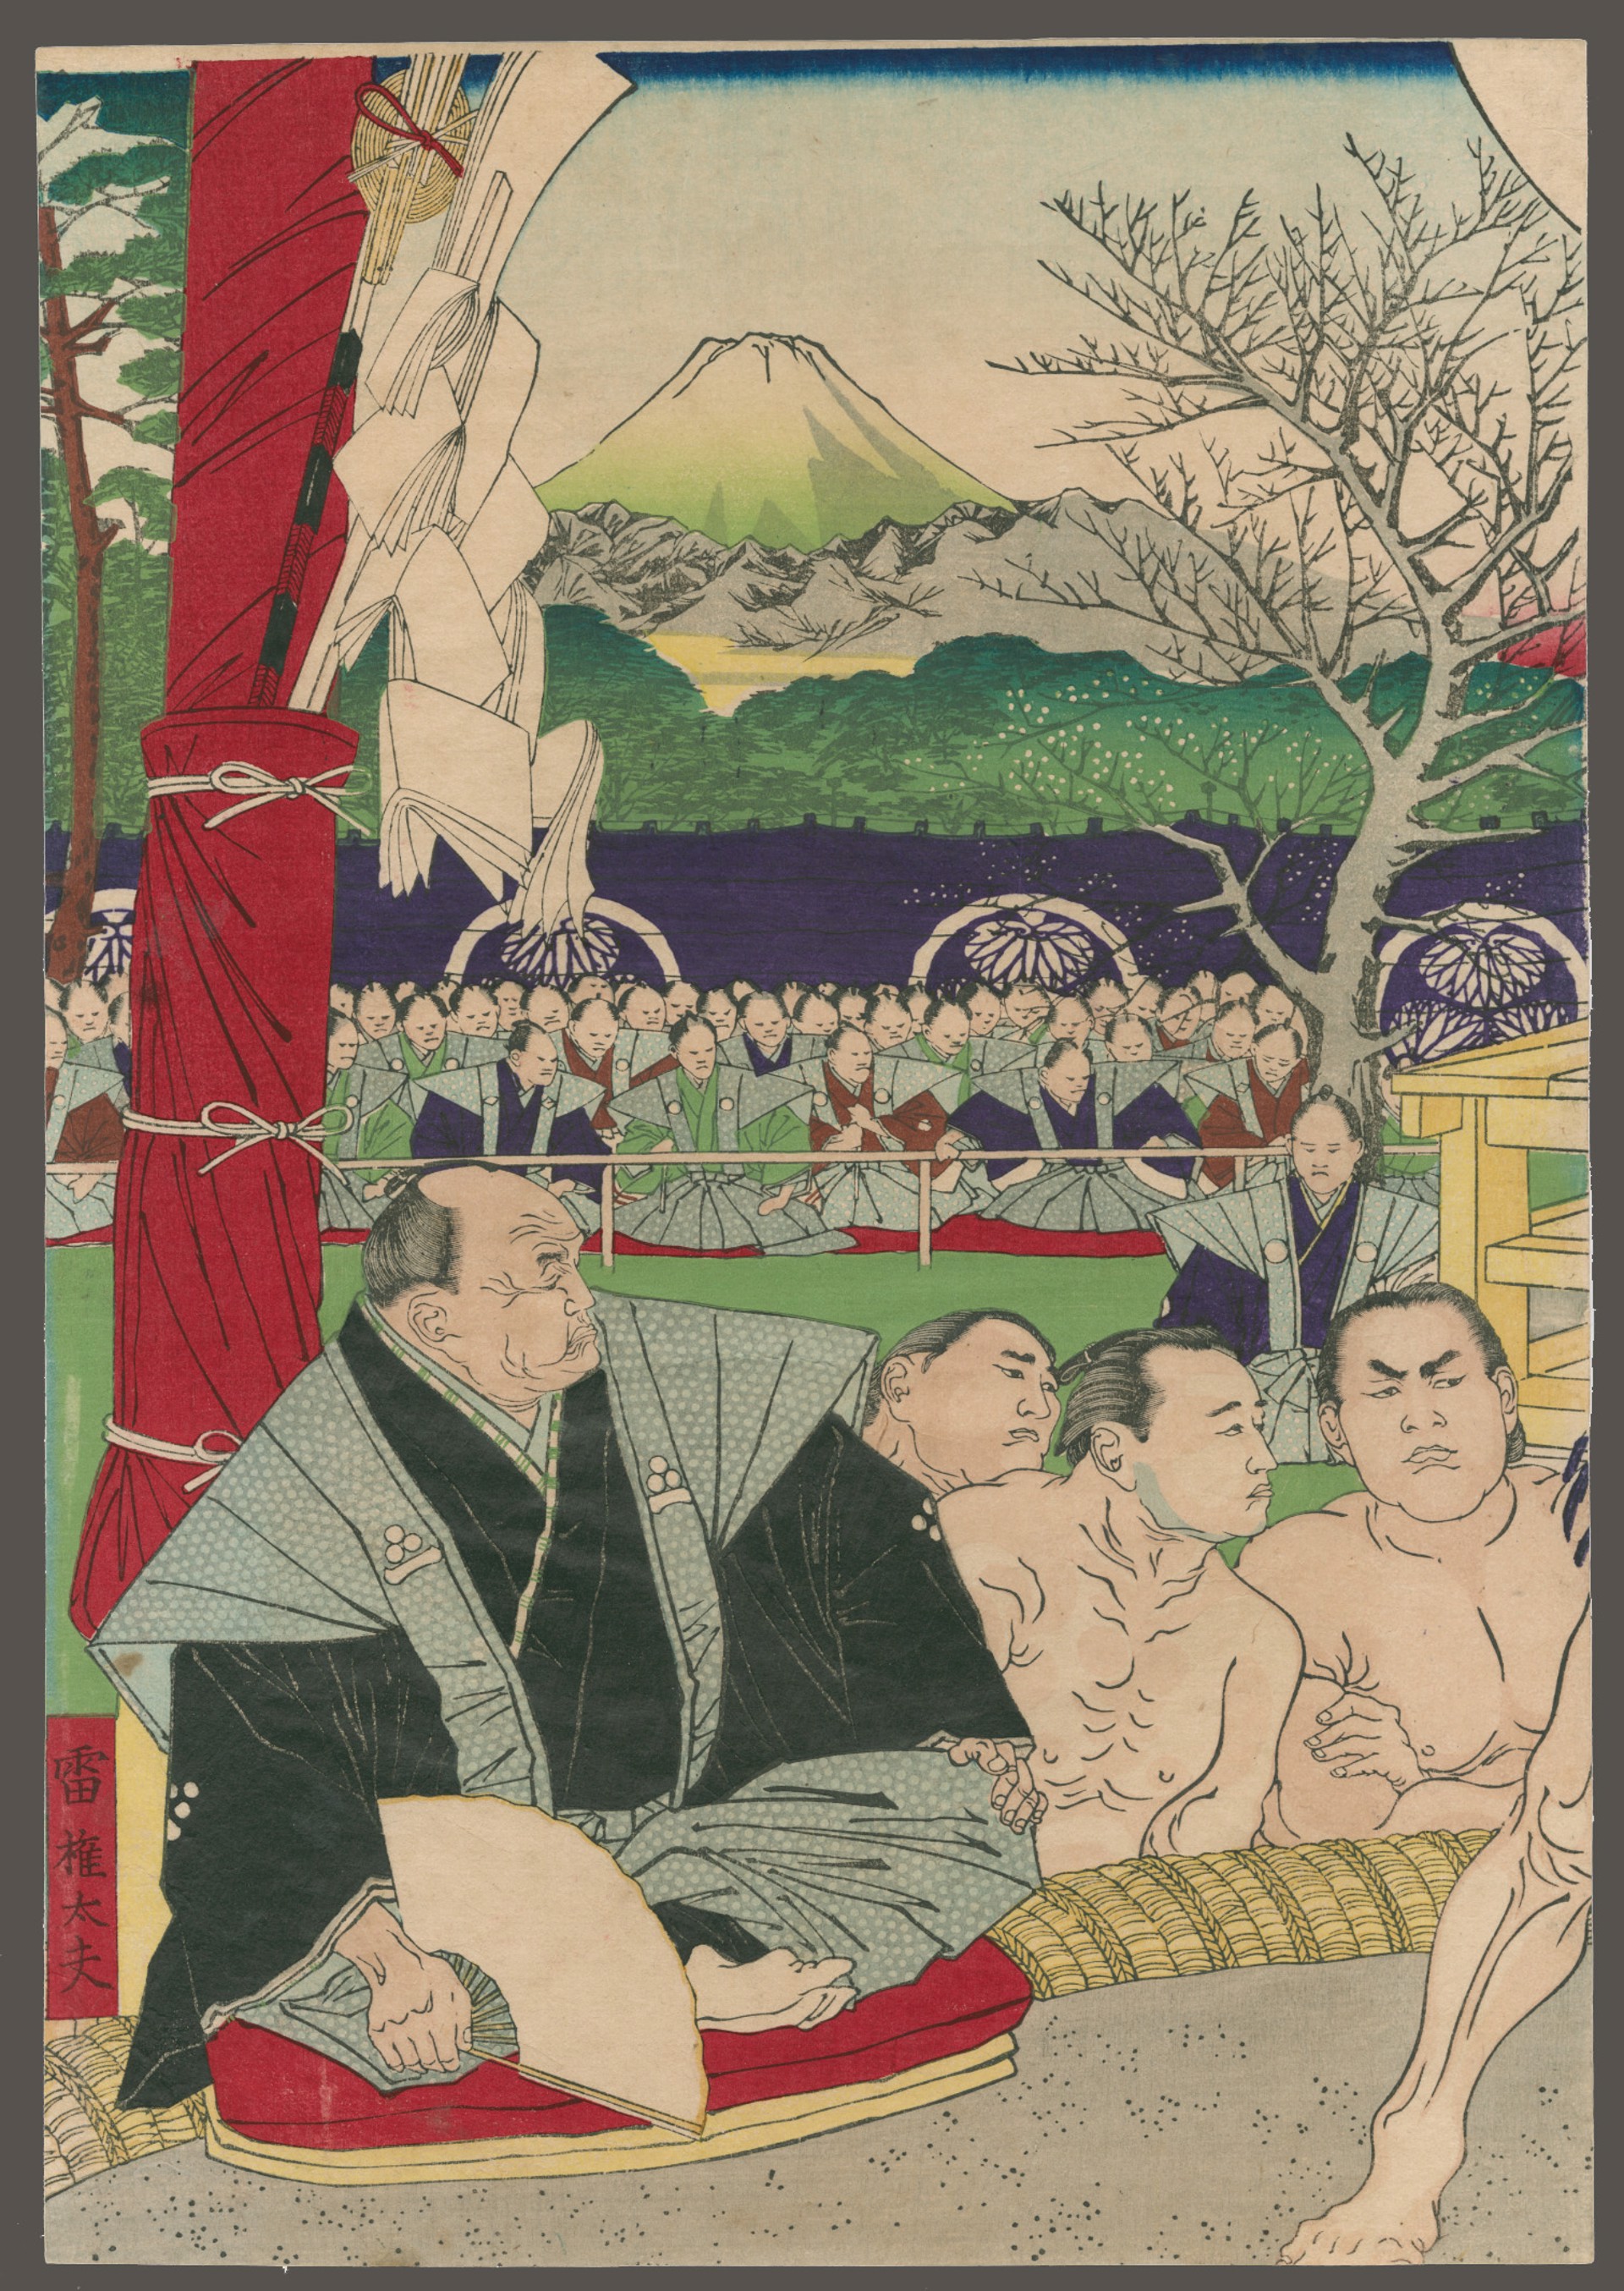 Ieasada, the 13th Shogun, Watching a Sumo Match Between Koyonagi Jokichi and aruma Daigoro at Fukiage Garden Annals of the Tokugawa Administration by Yoshitoshi